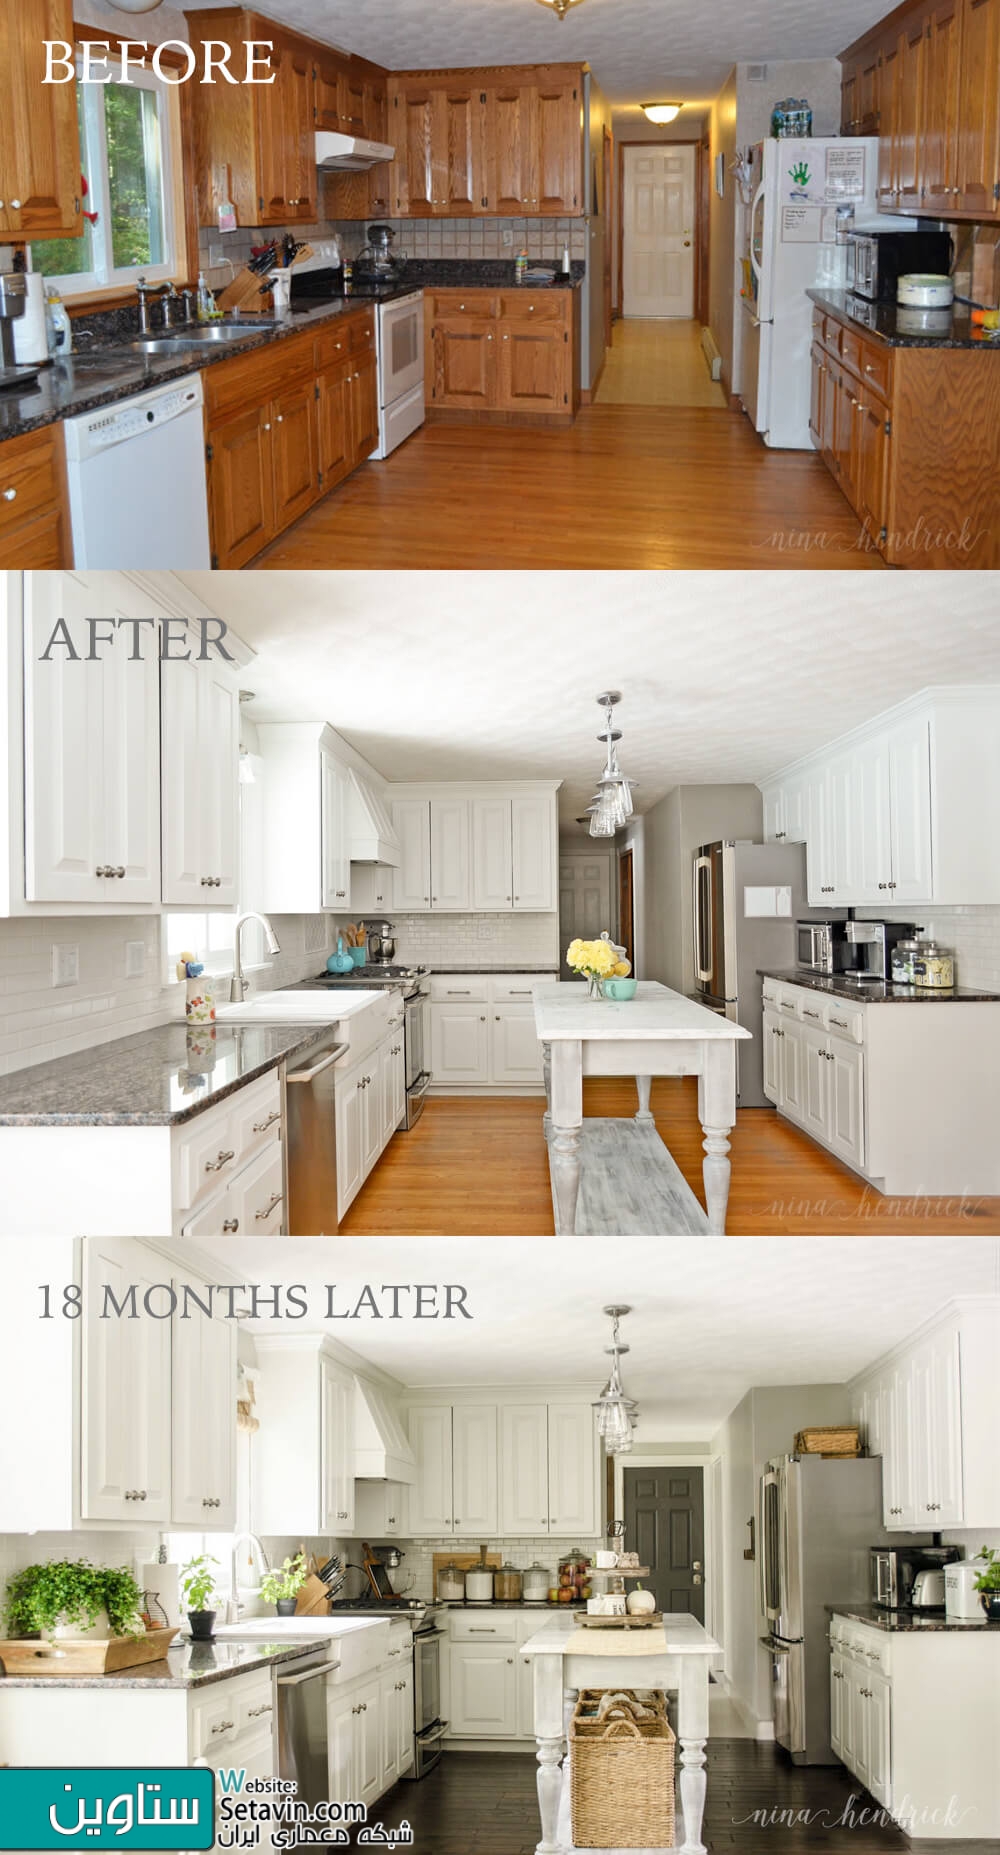 نمونه های جالب توجه از قبل و بعد از بازسازی آشپزخانه